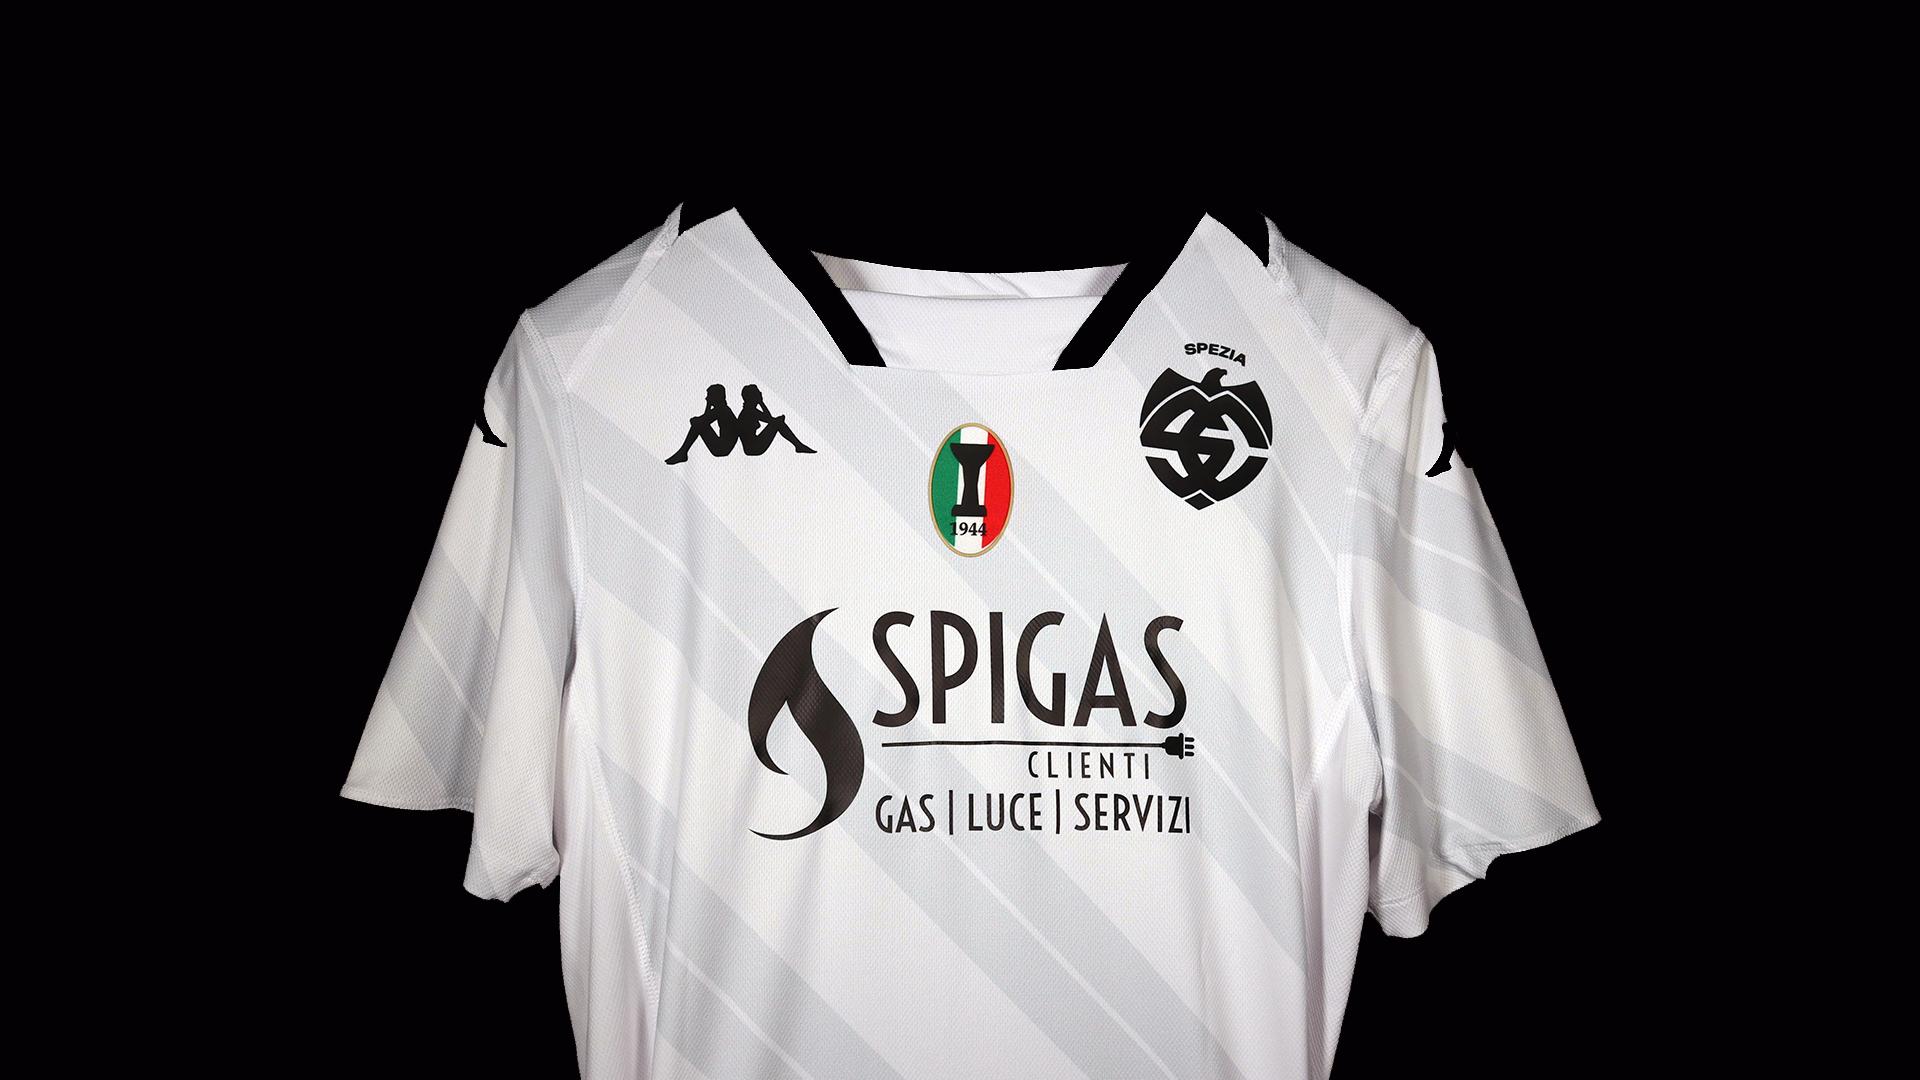 Spigas Clienti is the new Main Sponsor of Spezia Calcio